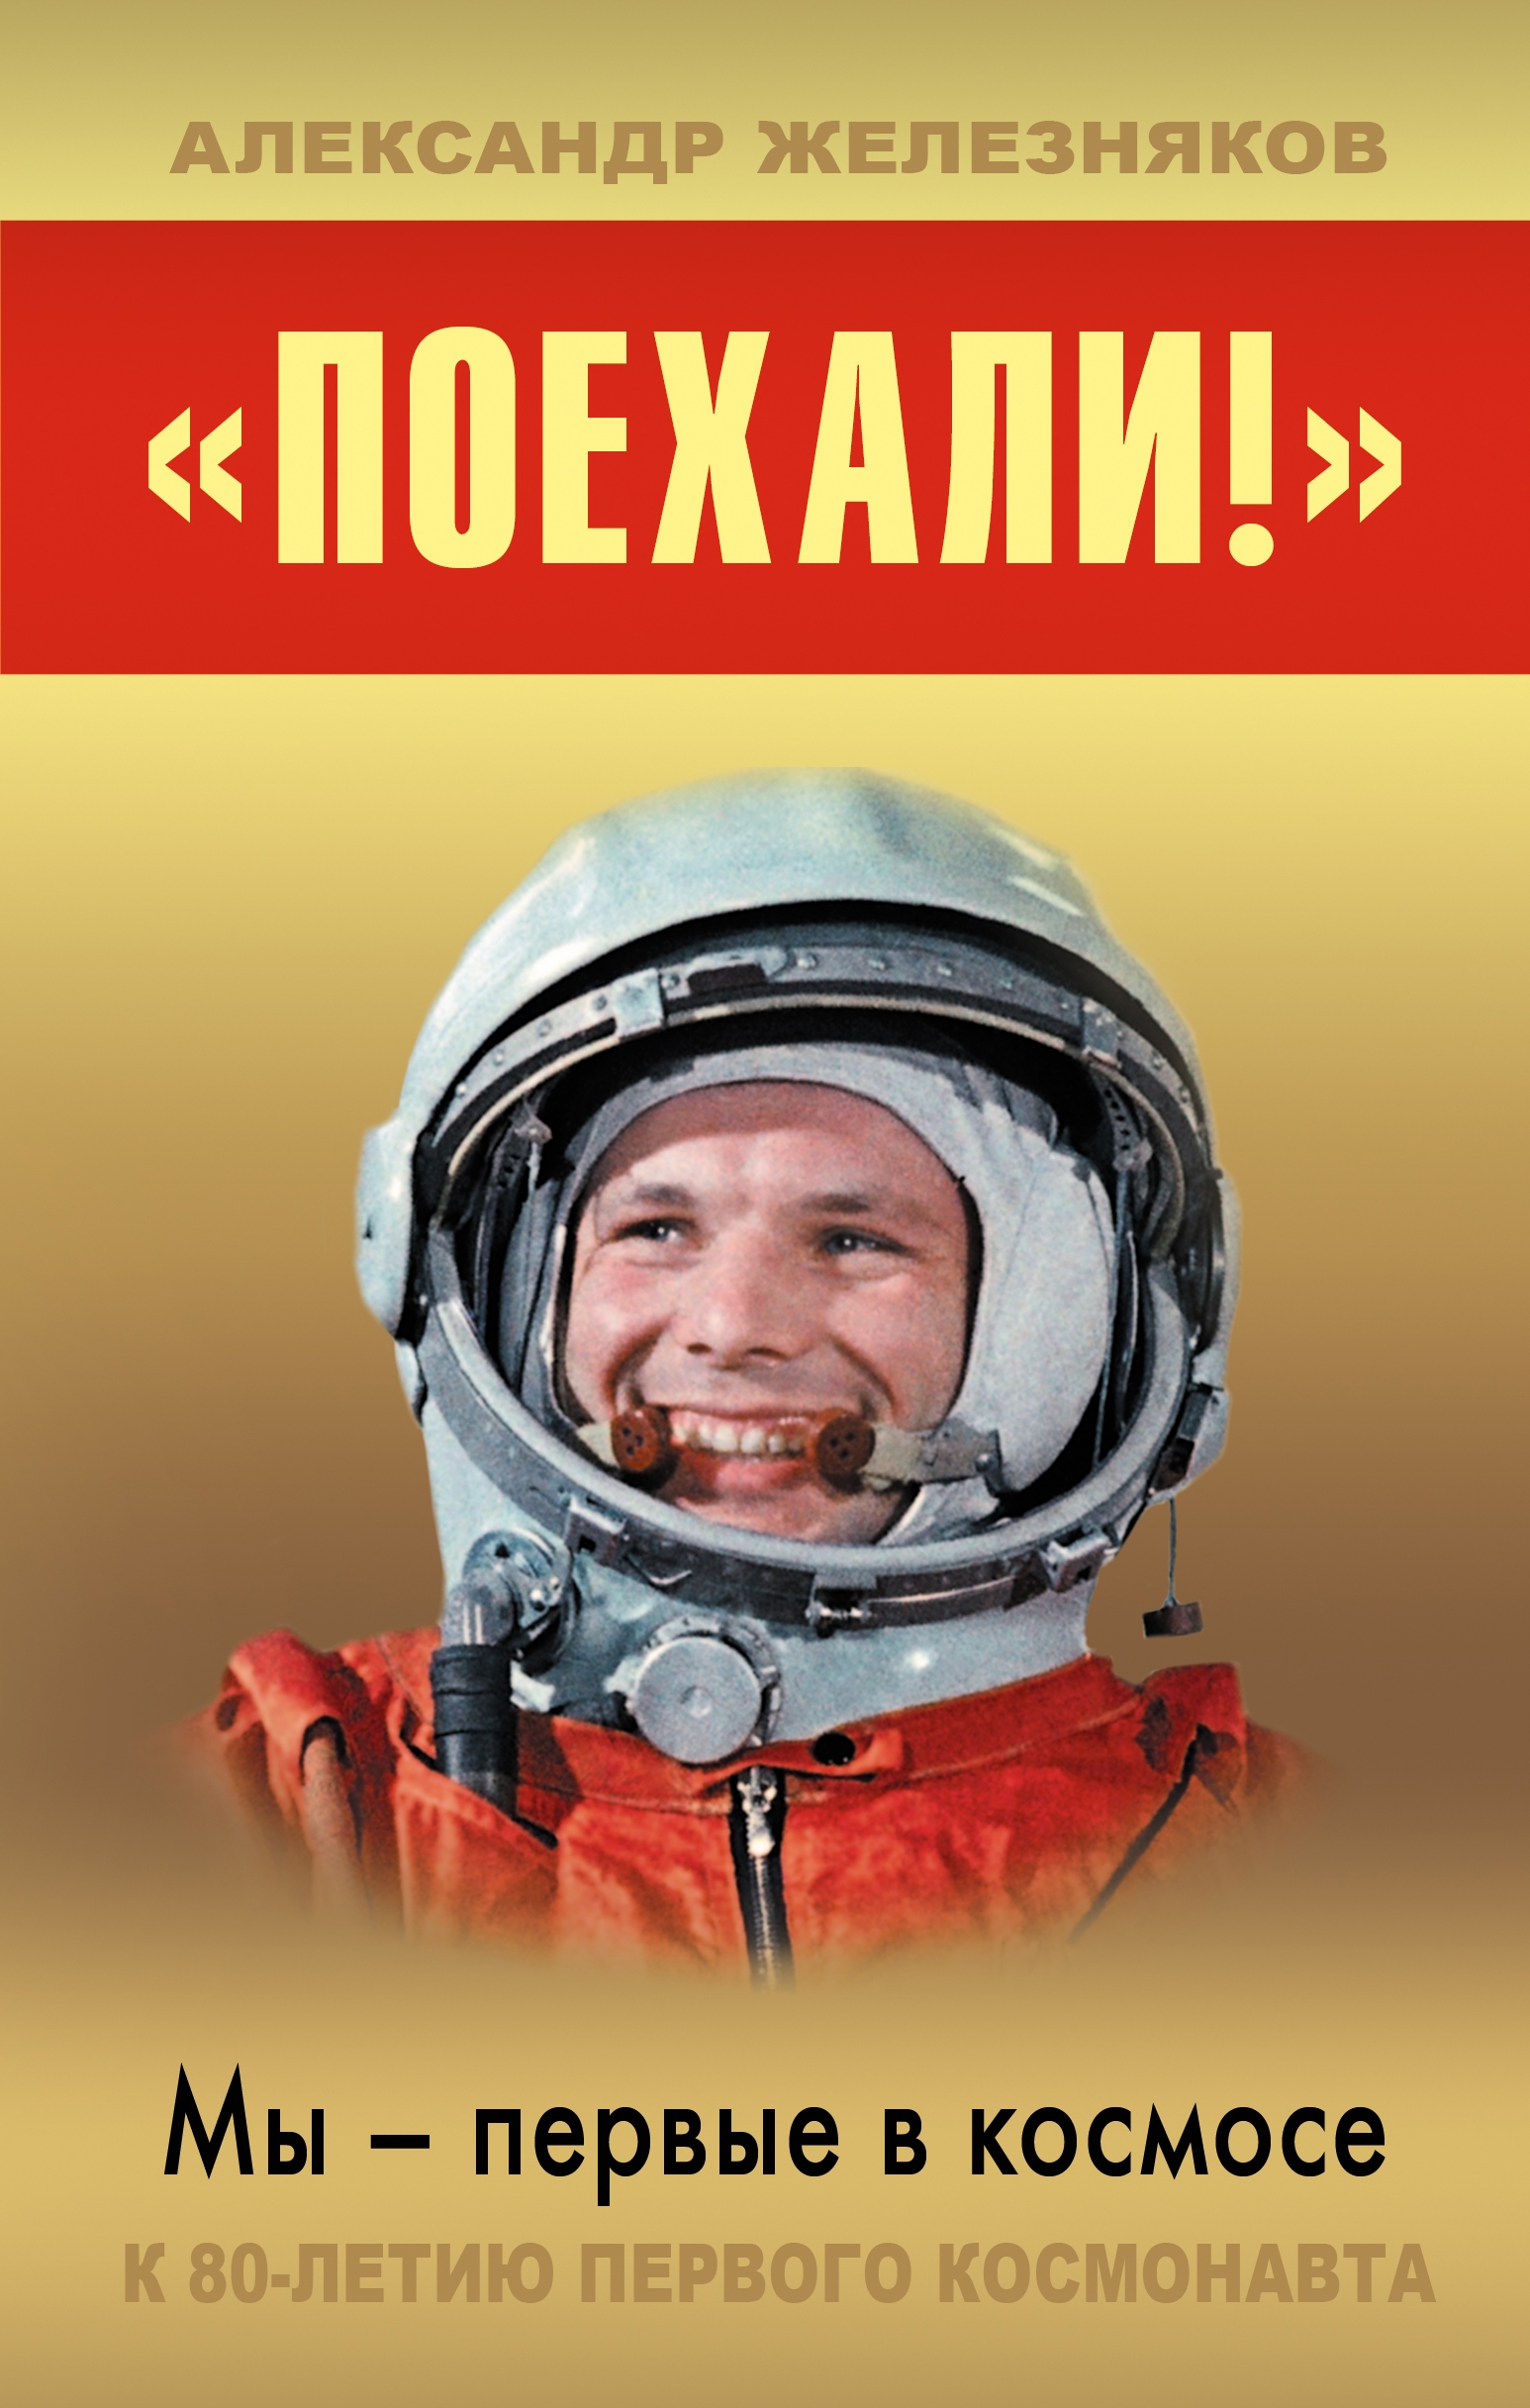 Вперед в космос читать. Мы первые в космосе. Книги о космосе и космонавтах. Гагарин поехали. Книги о Гагарине.